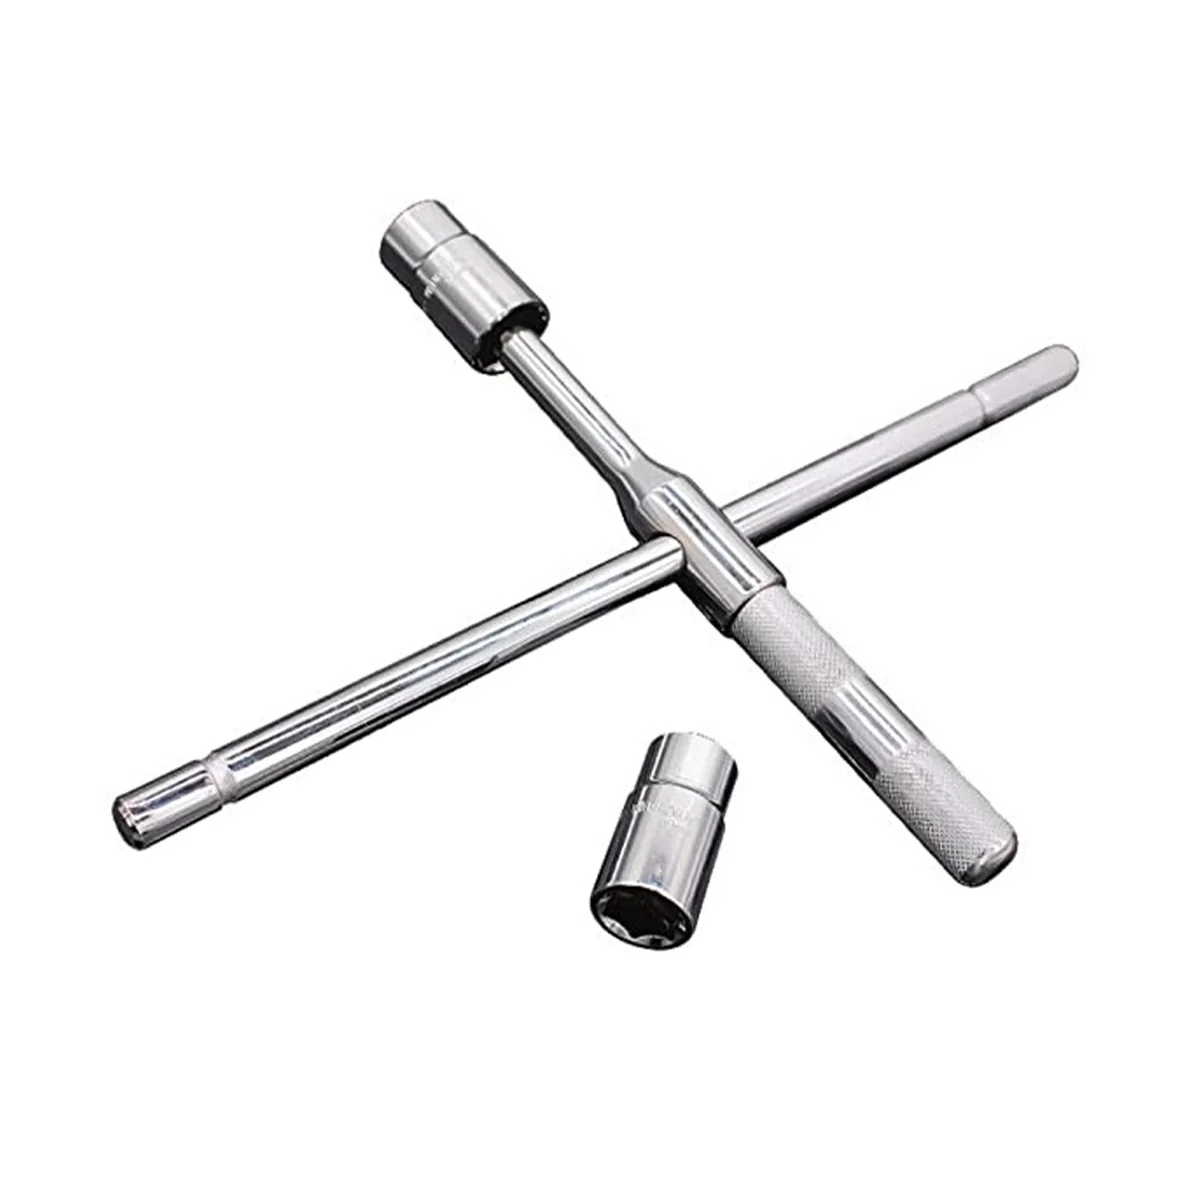 Гаечный ключ для замены шин, гаечный ключ для разборки T-типа 17 19 21 23 мм, универсальный набор для трудозатратной разборки